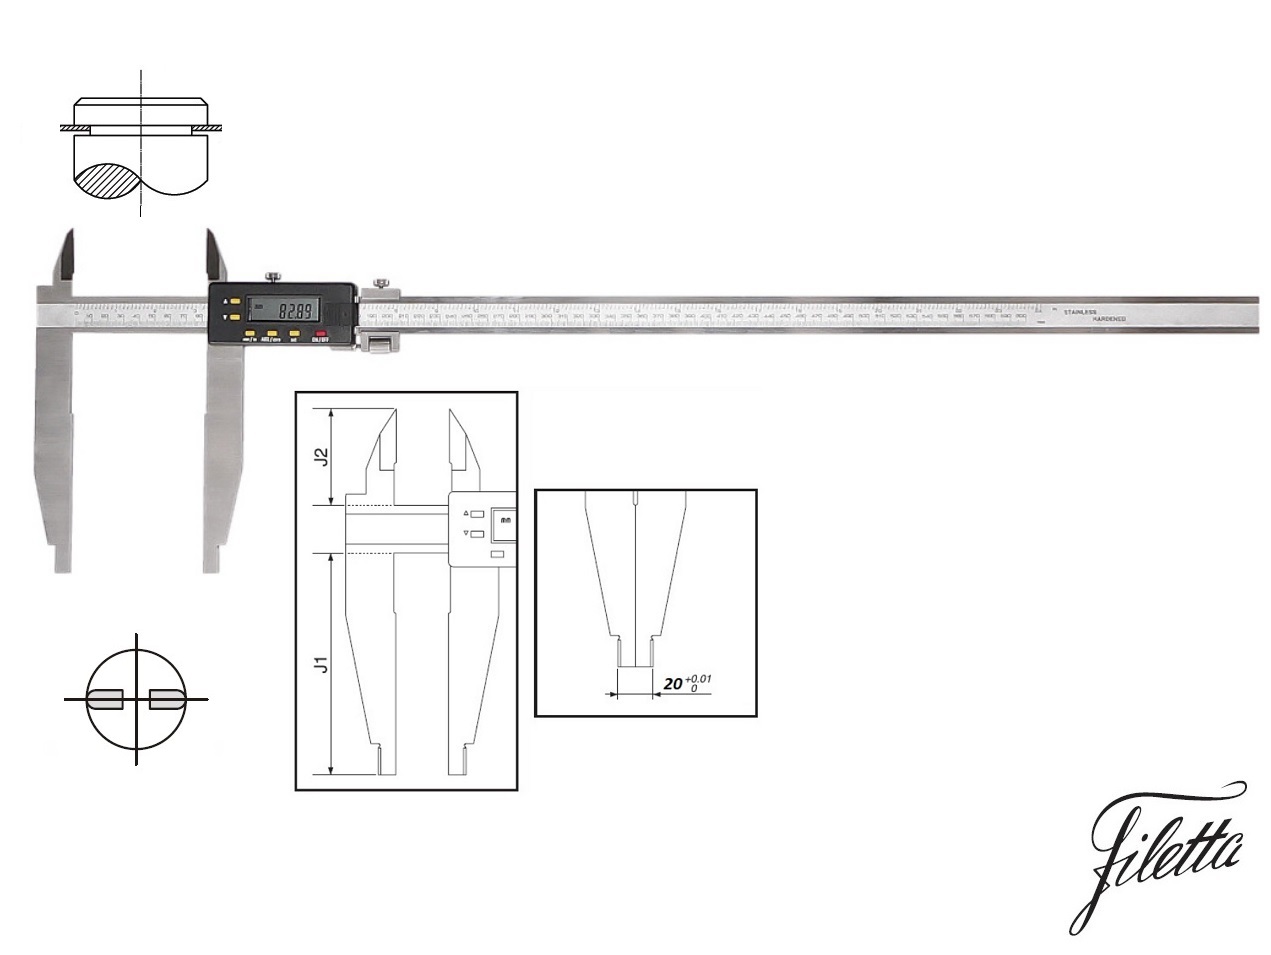 Digitální posuvné měřítko Filetta 0-1500 mm s měřicími nožíky pro vnější měření